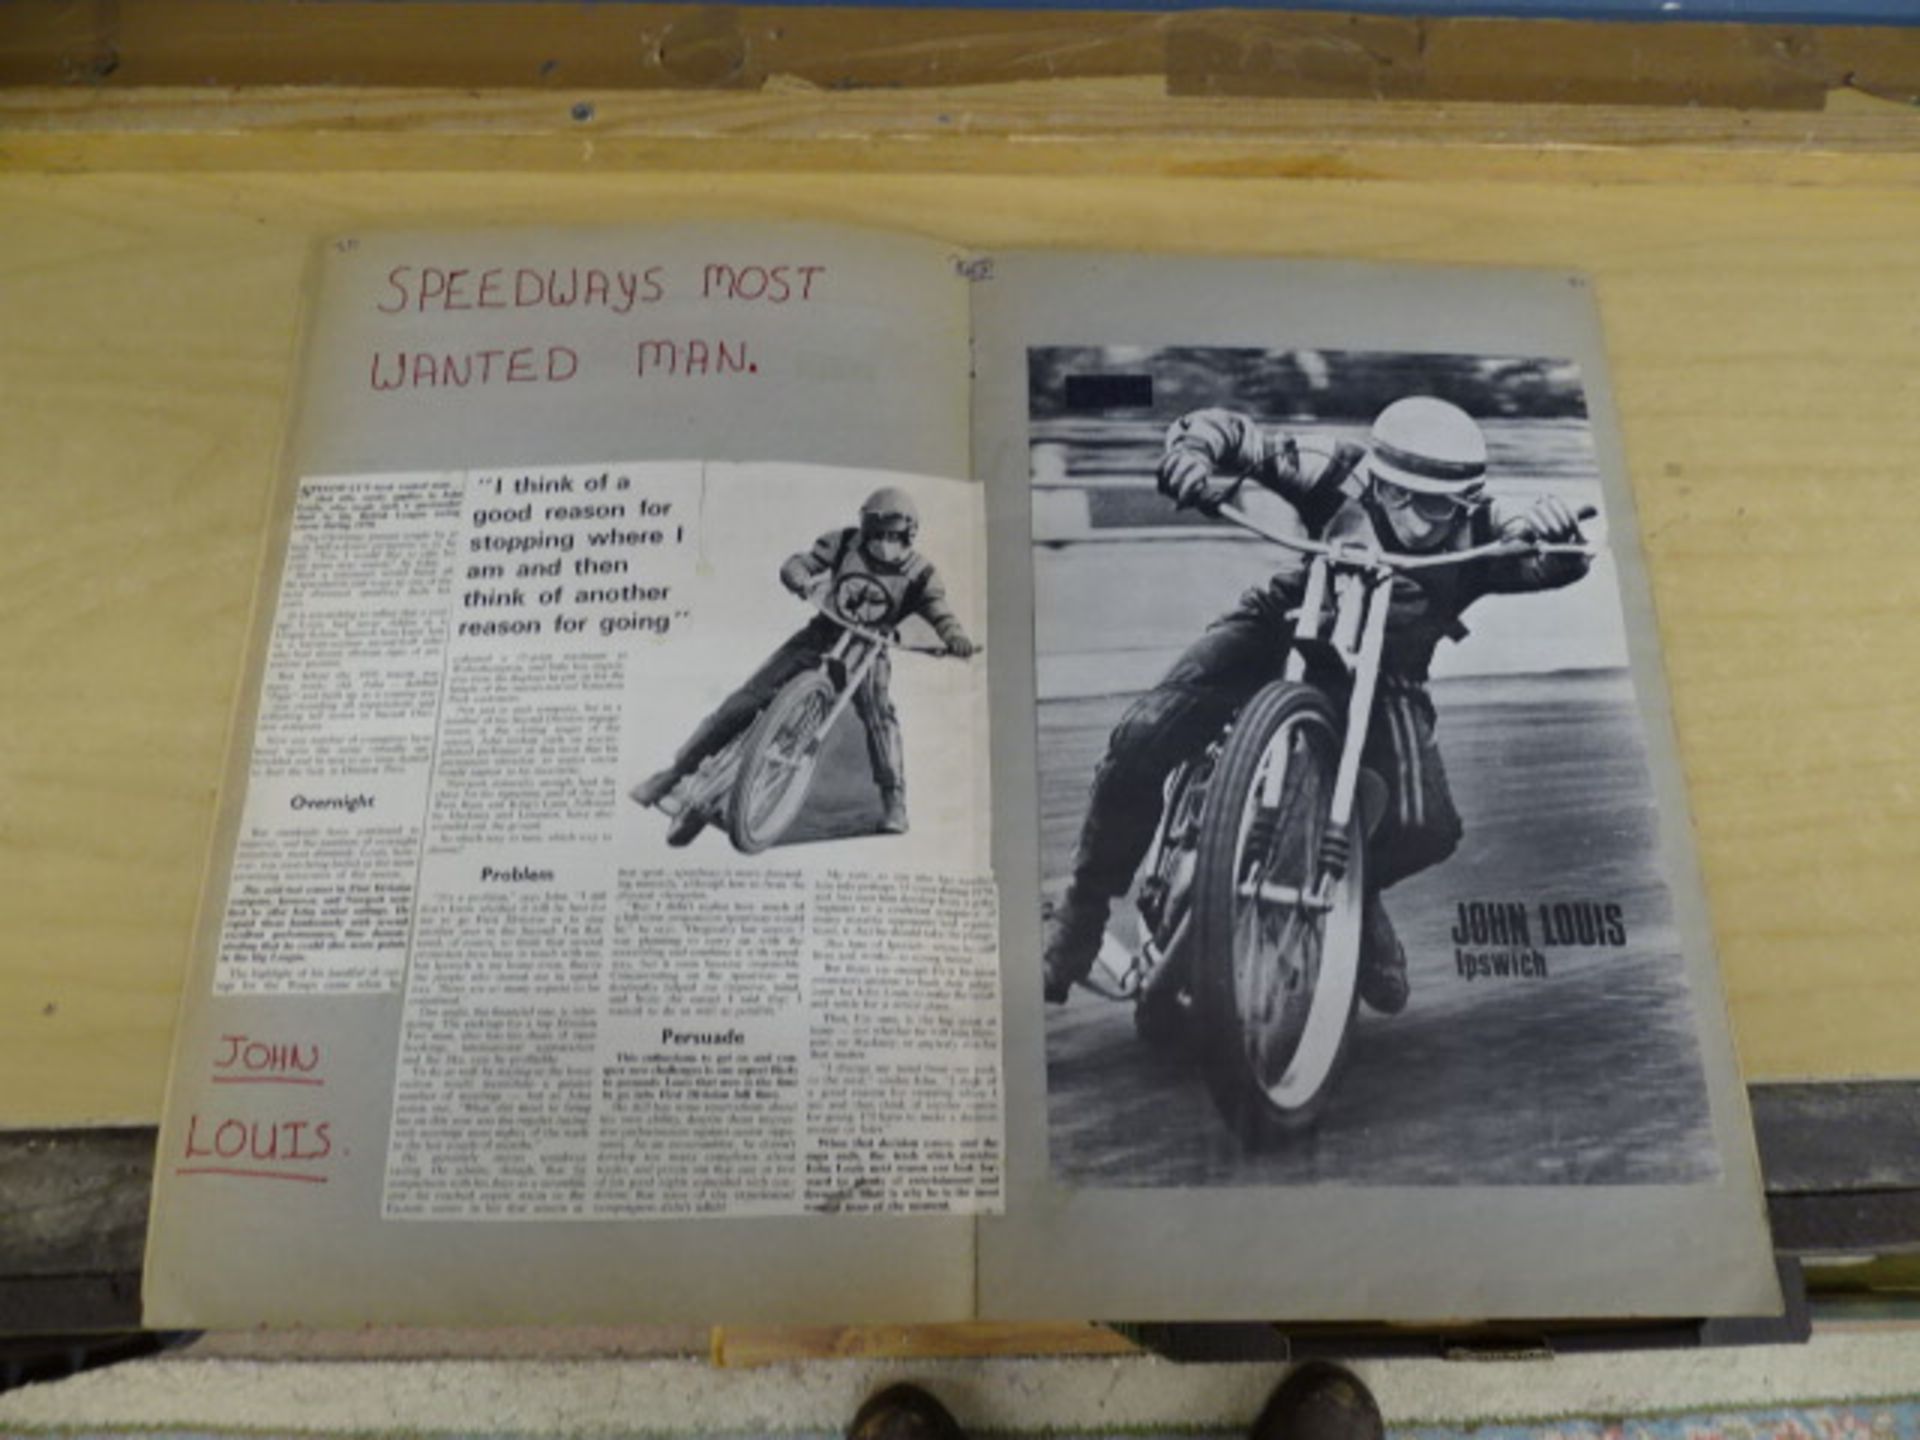 1971 Speedway scrapbook - Image 12 of 21